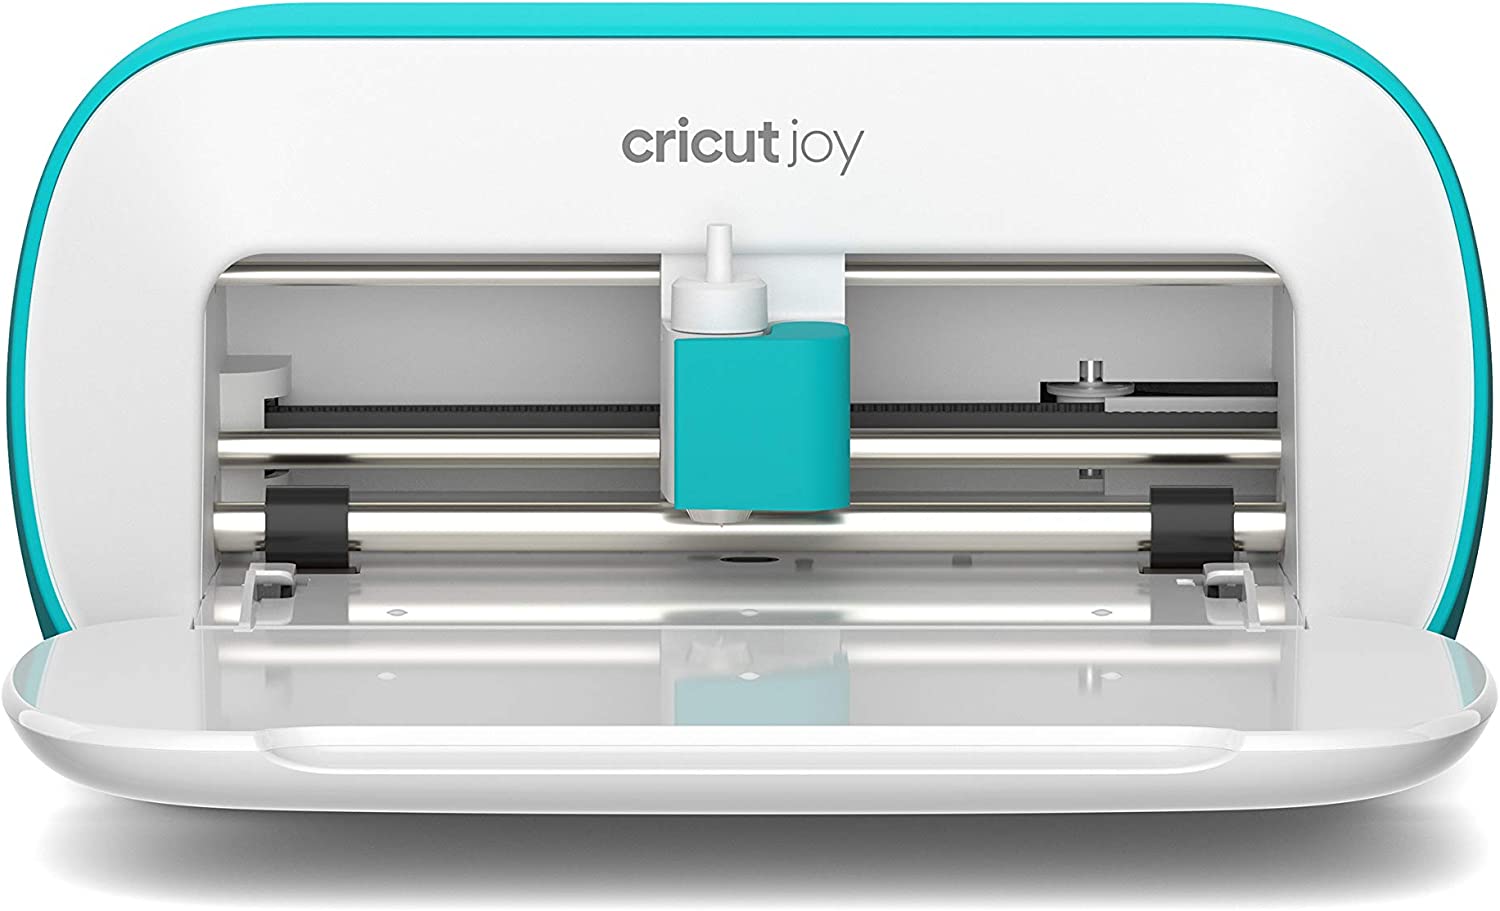 دستگاه برش کریکات Cricut مدل Cricut Joy - ارسال ۱۰ الی ۱۵ روز کاری